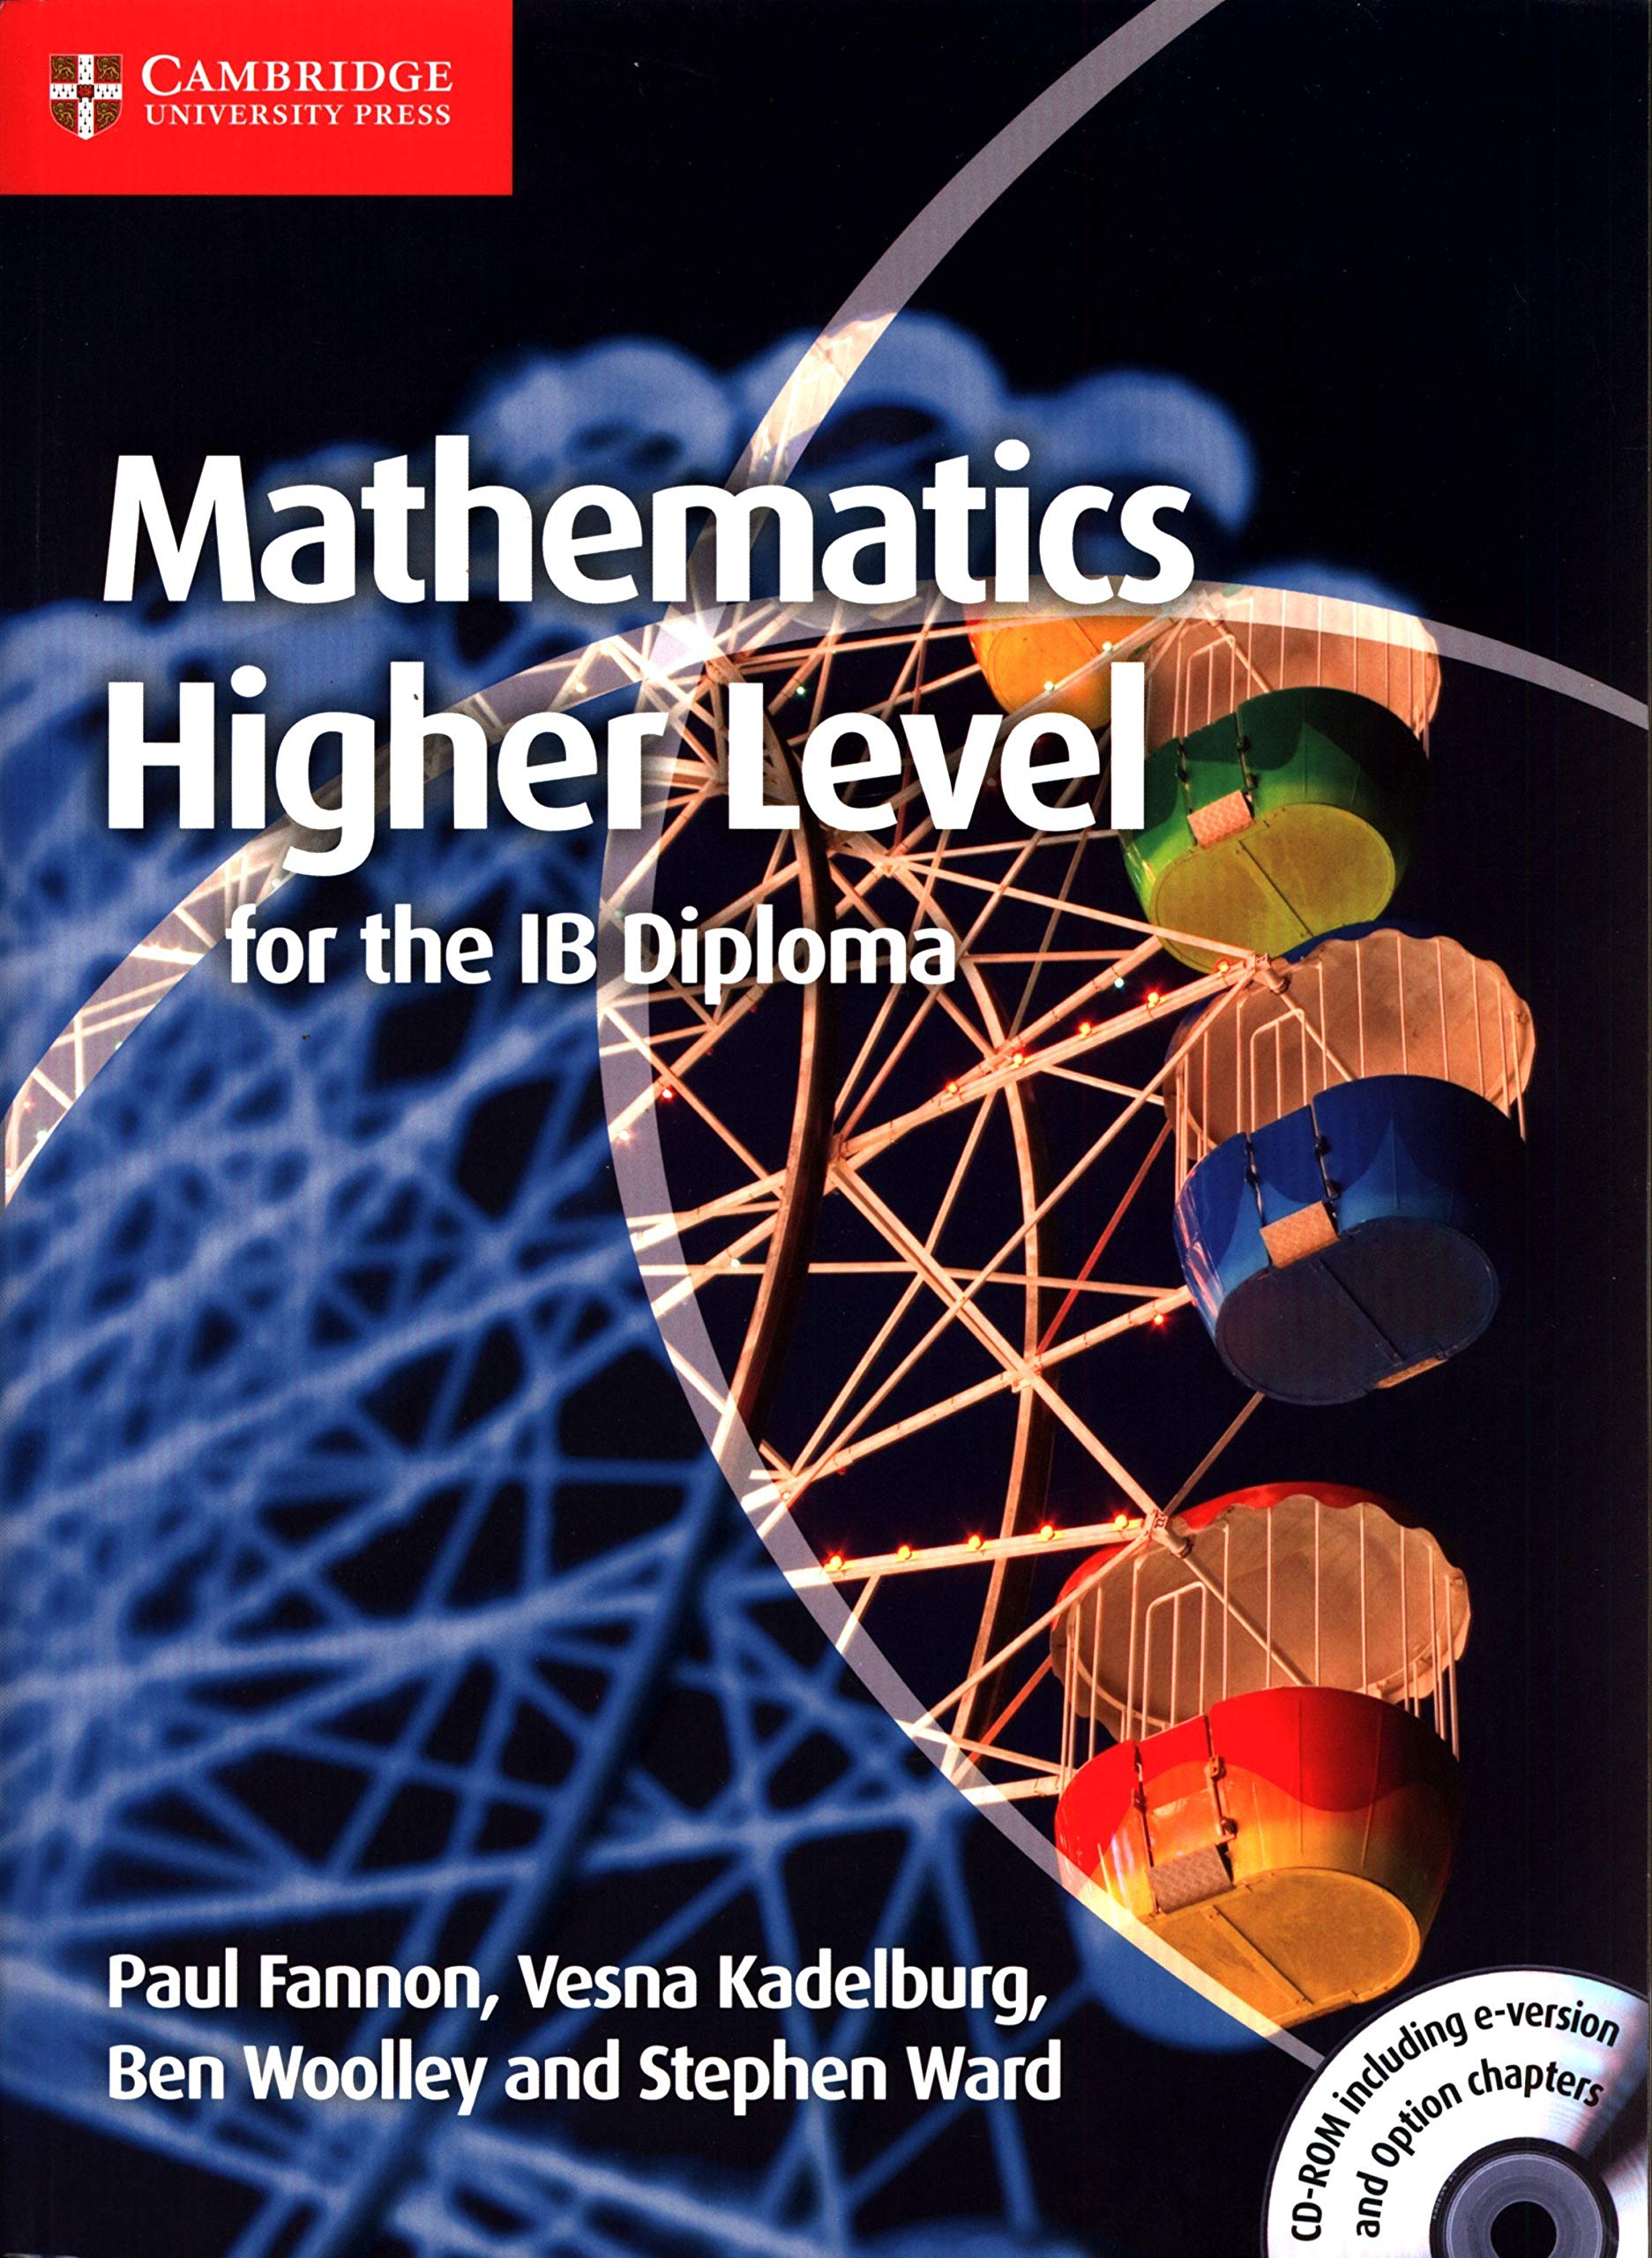 Cambridge mathematics. IB Diploma Math High Level. Естественные науки в школе. Информационные технологии в изучении иностранного языка.